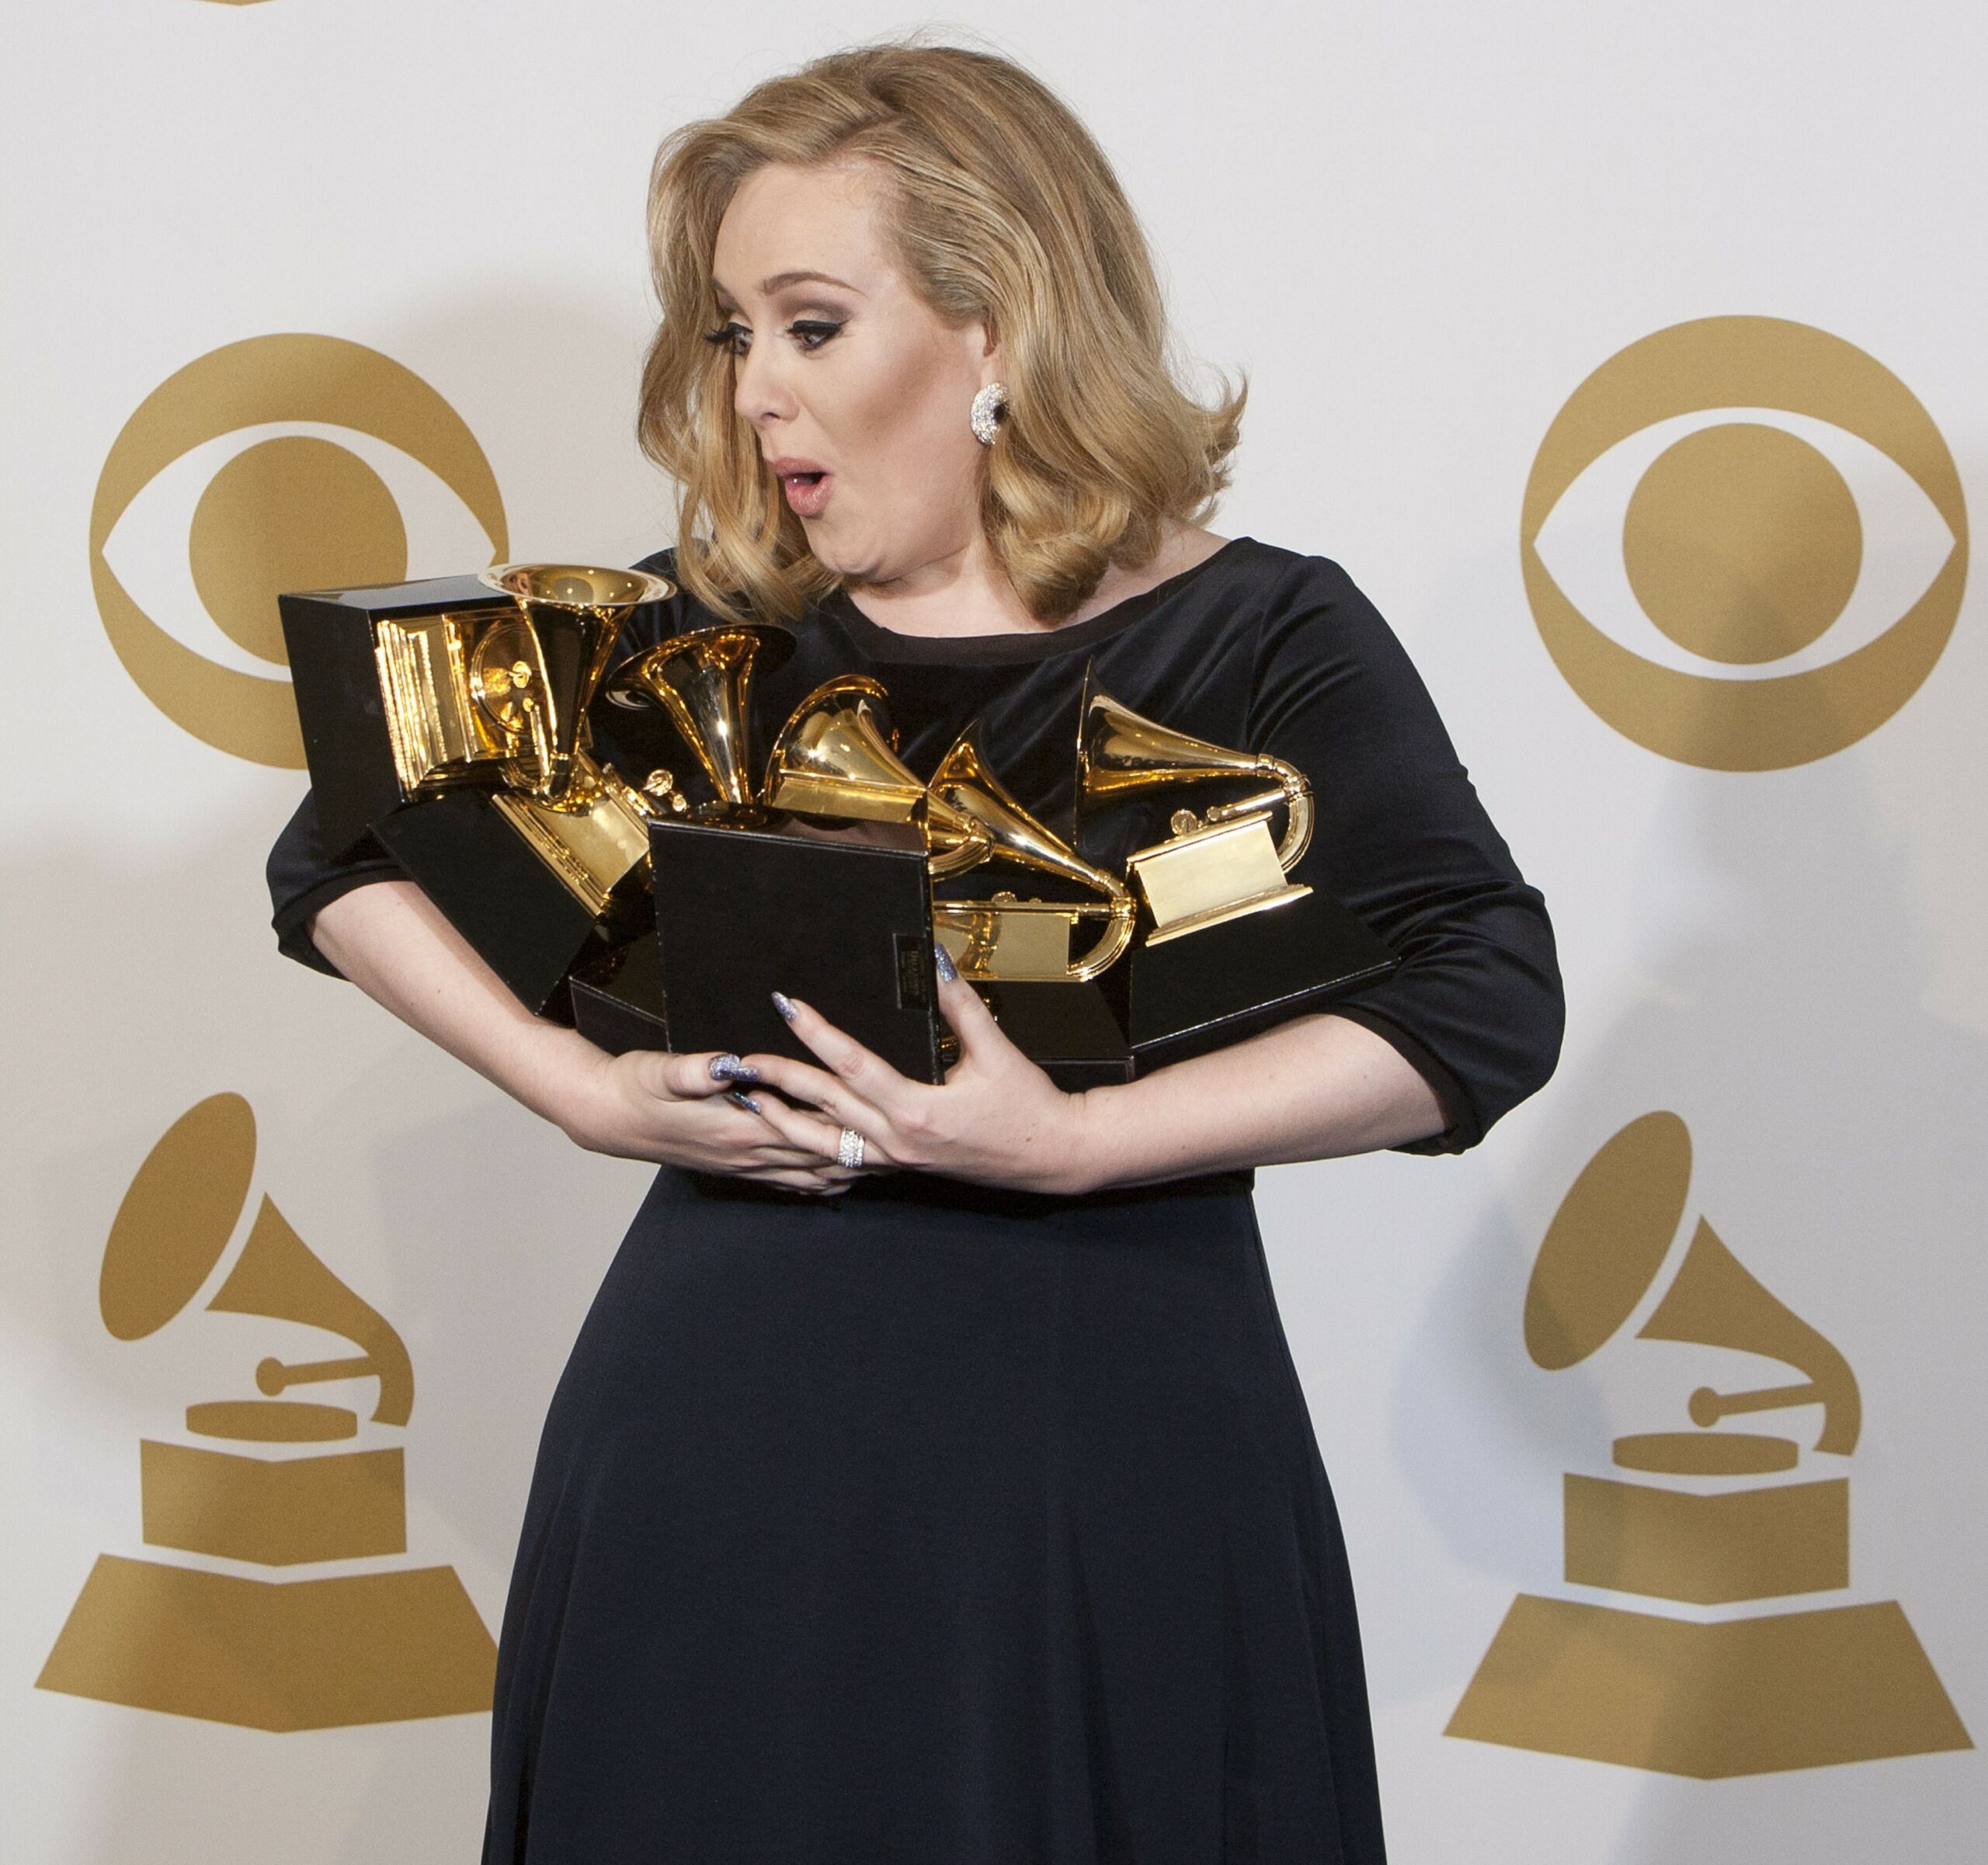 Aww! Melodiile lui Adele, în varianta de adormit bebeluși. Ascultă cum sună ”Rolling In The Deep”!